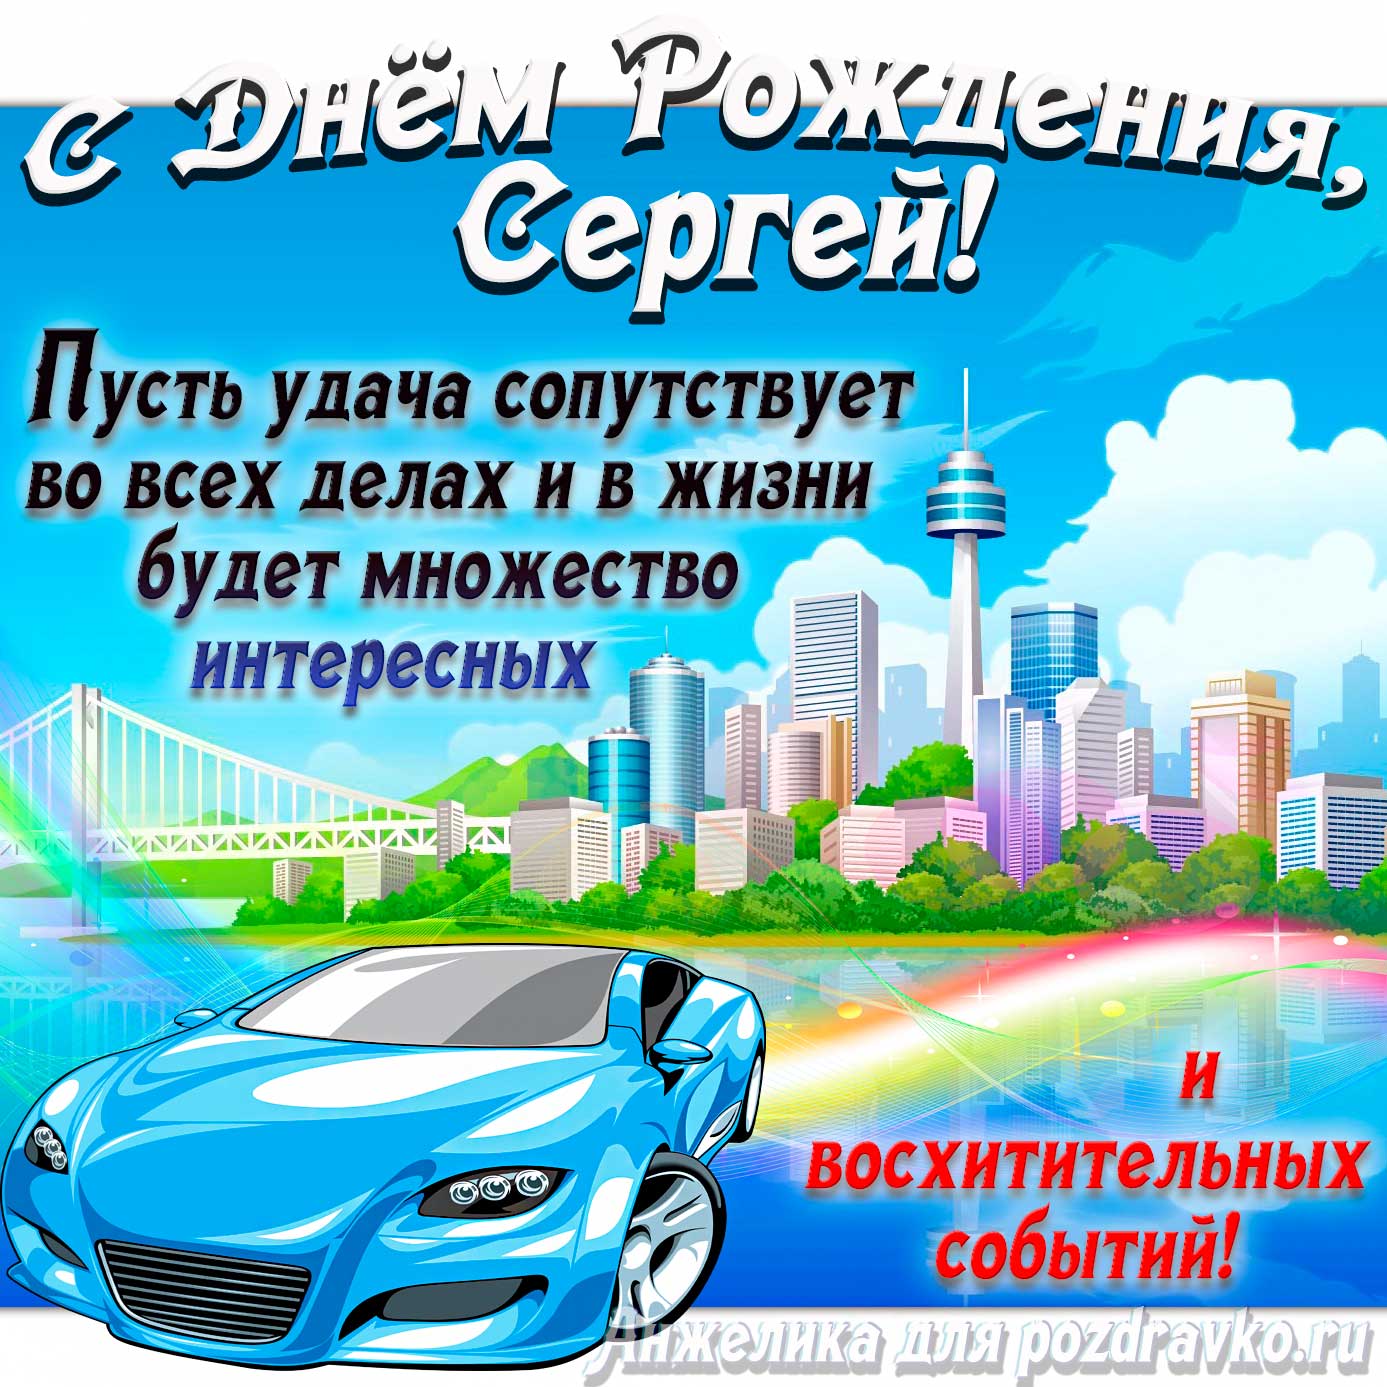 Открытка - с Днём Рождения Сергей с голубой машиной и пожеланием. Скачать бесплатно или отправить картинку.